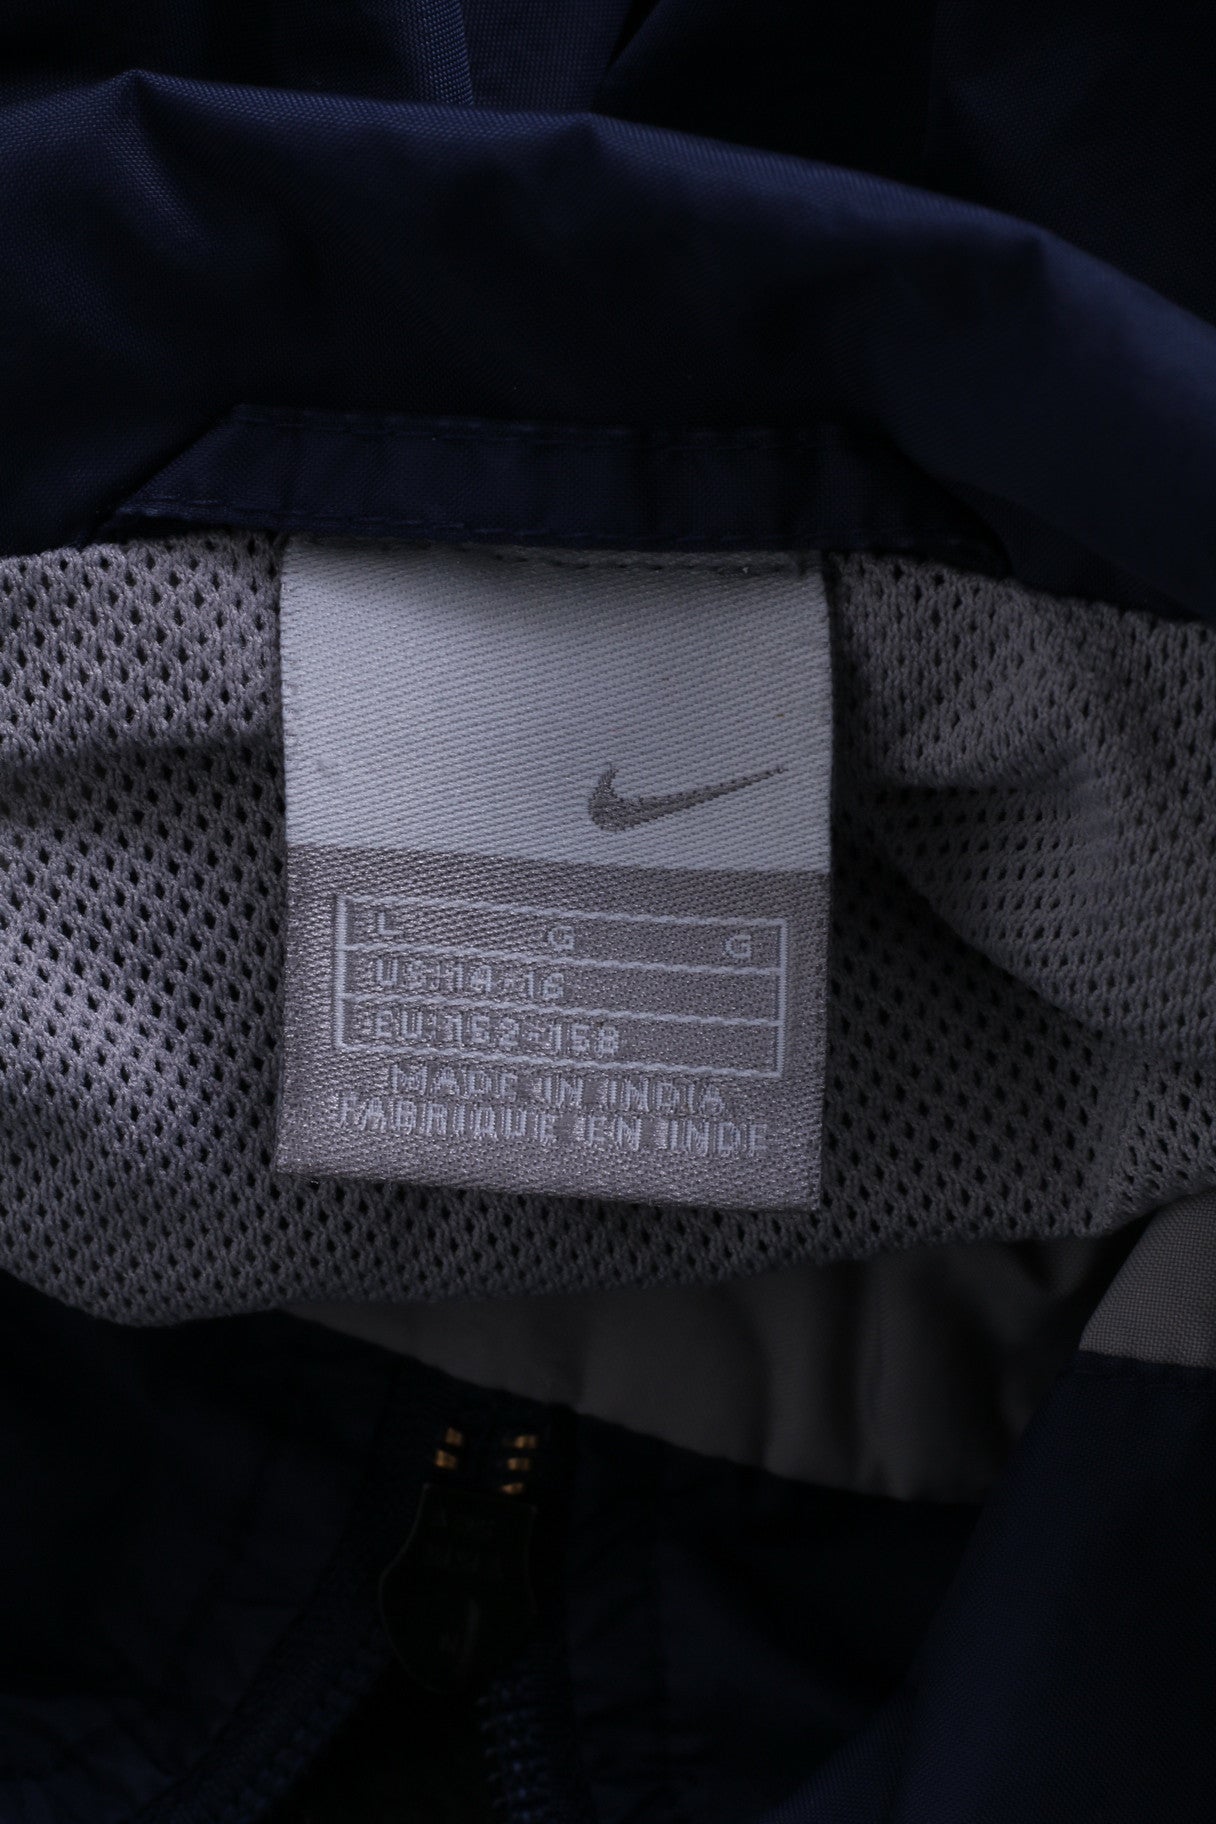 Giacca Nike da ragazzo, 14-16 anni, pullover leggero, nylon blu, atletica, collo con zip, allenamento